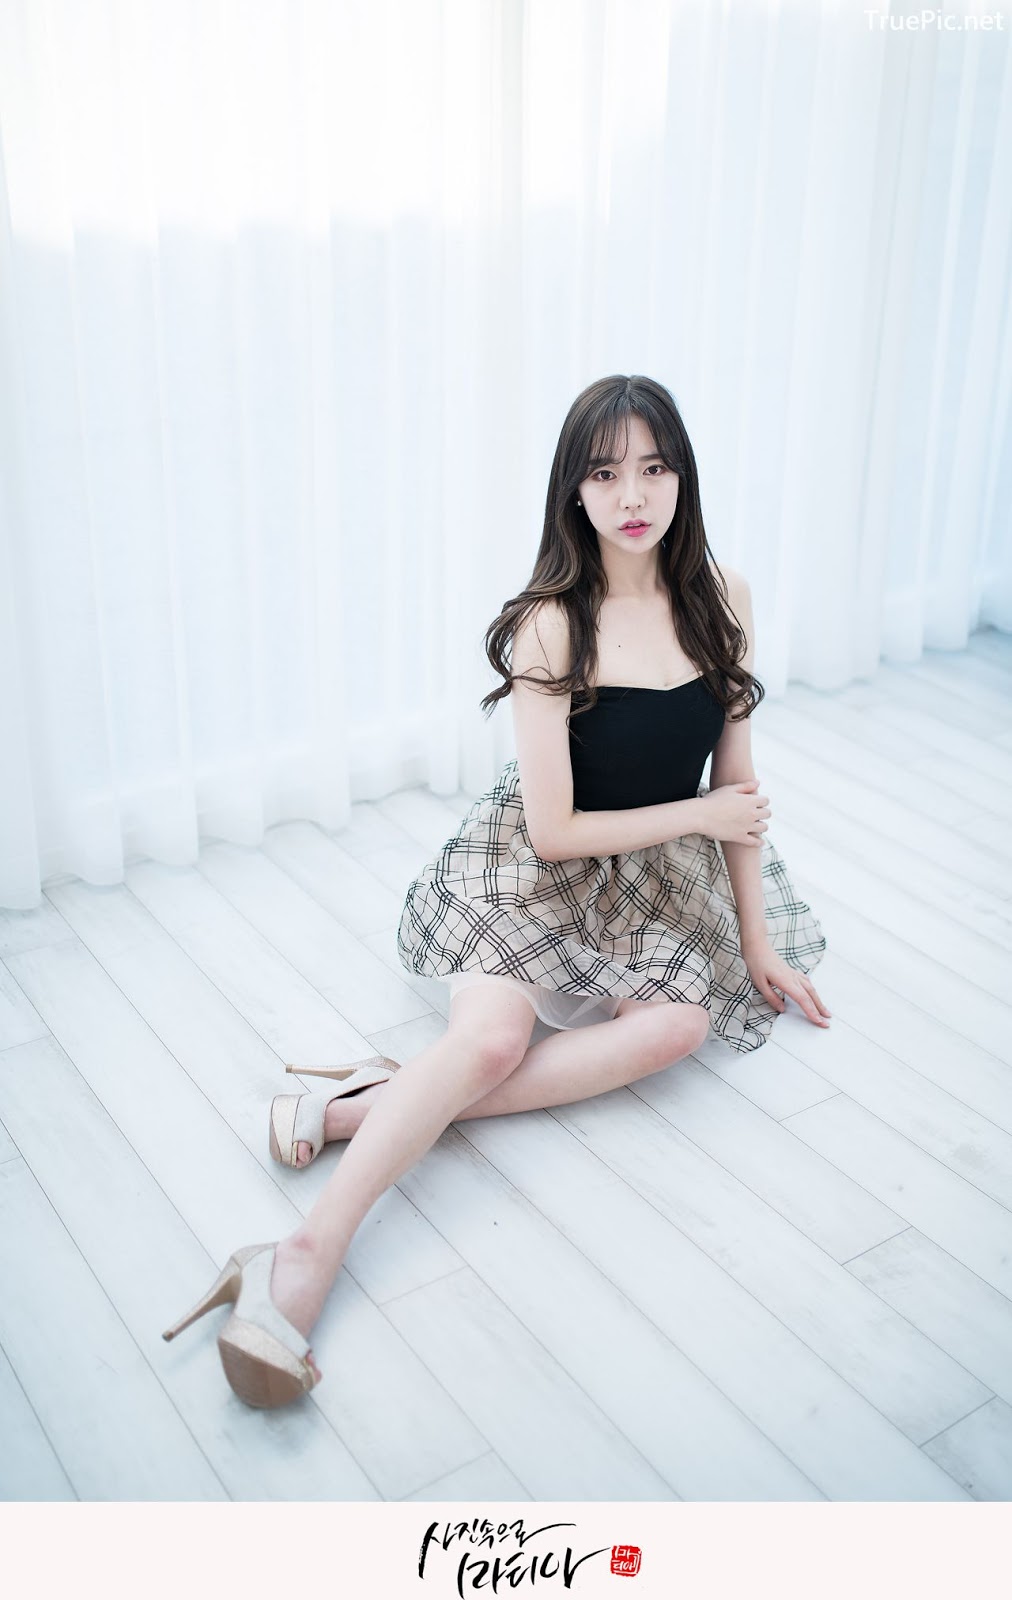 Image-Korean-Hot-Model-Go-Eun-Yang-Indoor-Photoshoot-Collection-TruePic.net- Picture-9